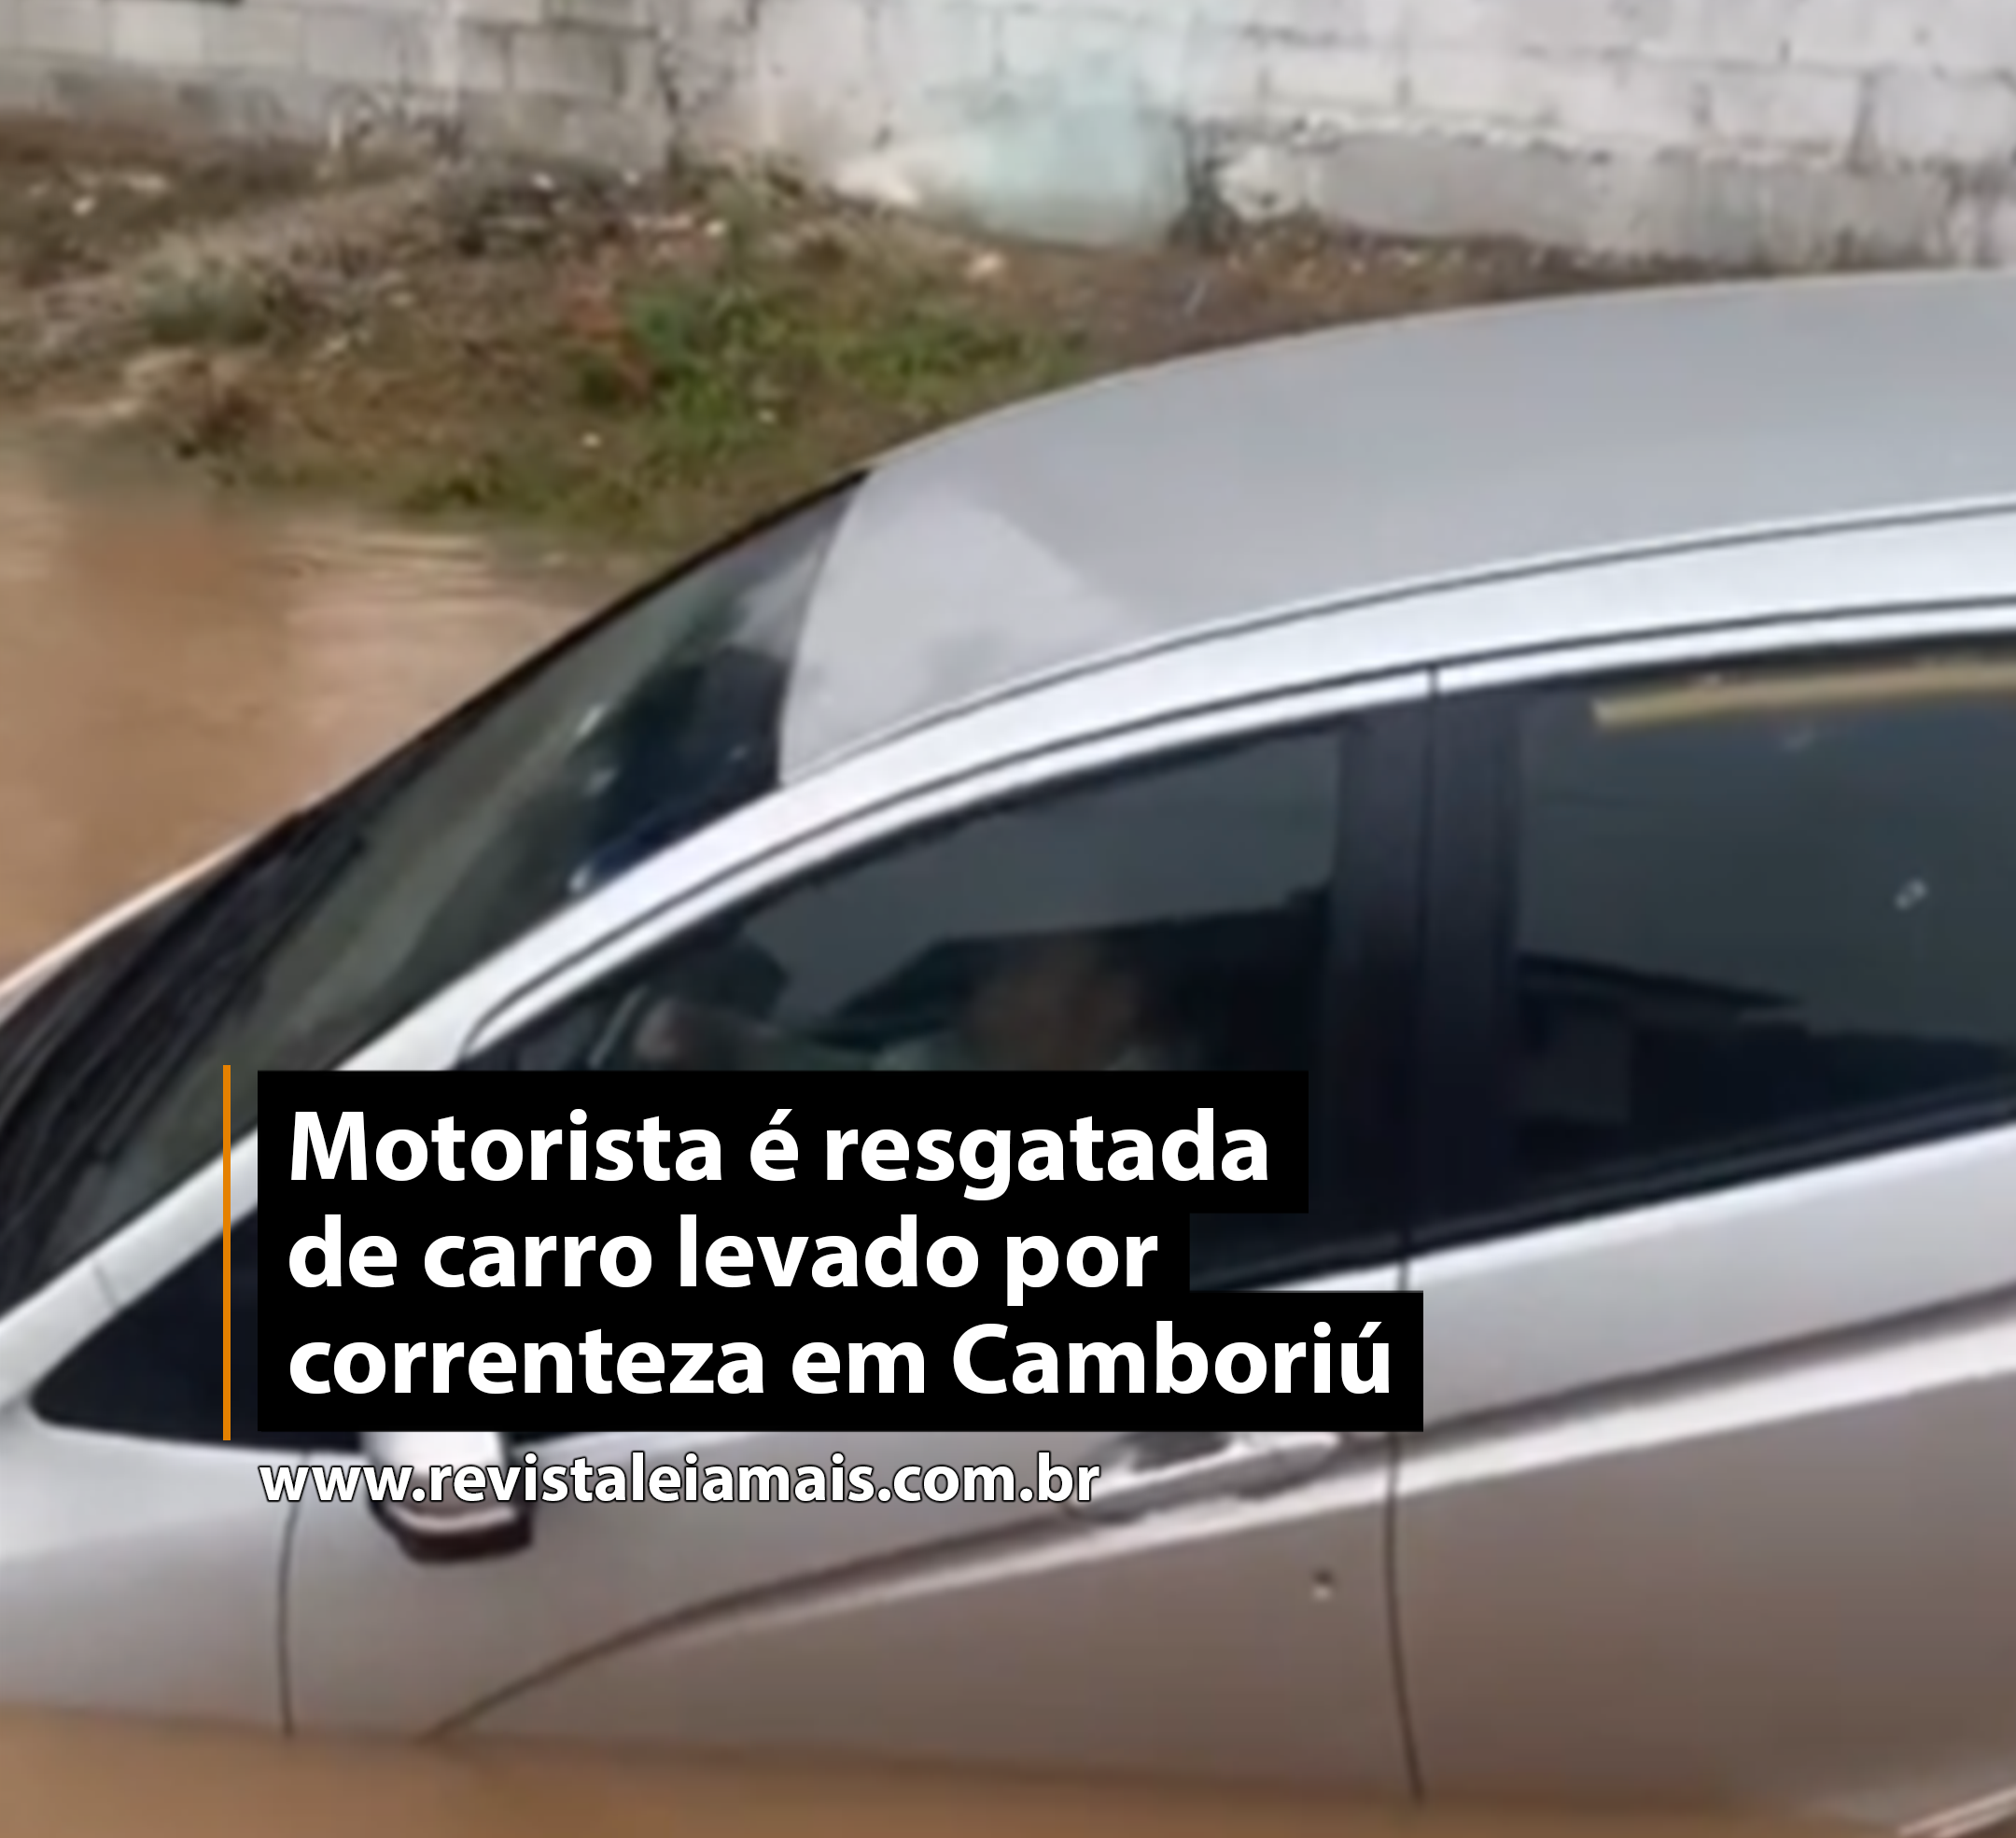 Motorista é resgatada de carro levado por correnteza em Camboriú